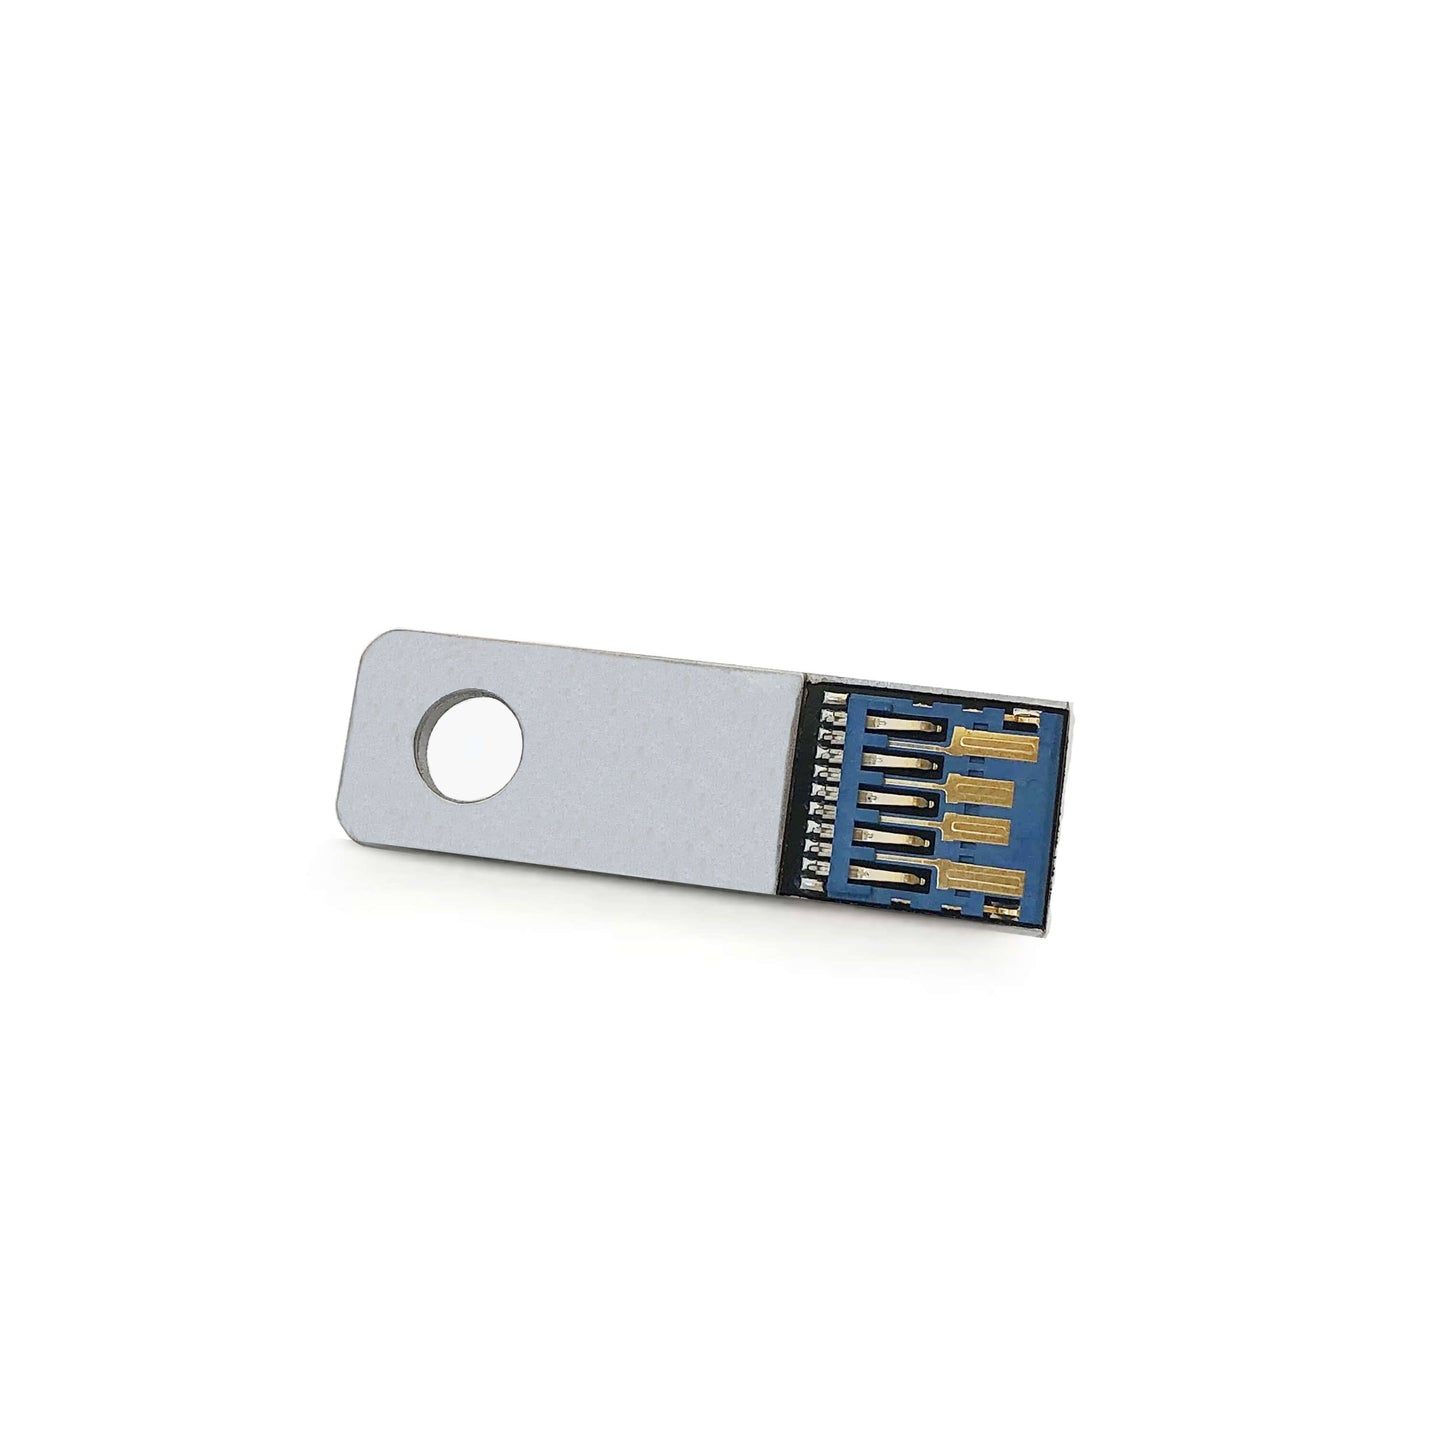 Ultra slim USB Drive 3.0 (32GB)